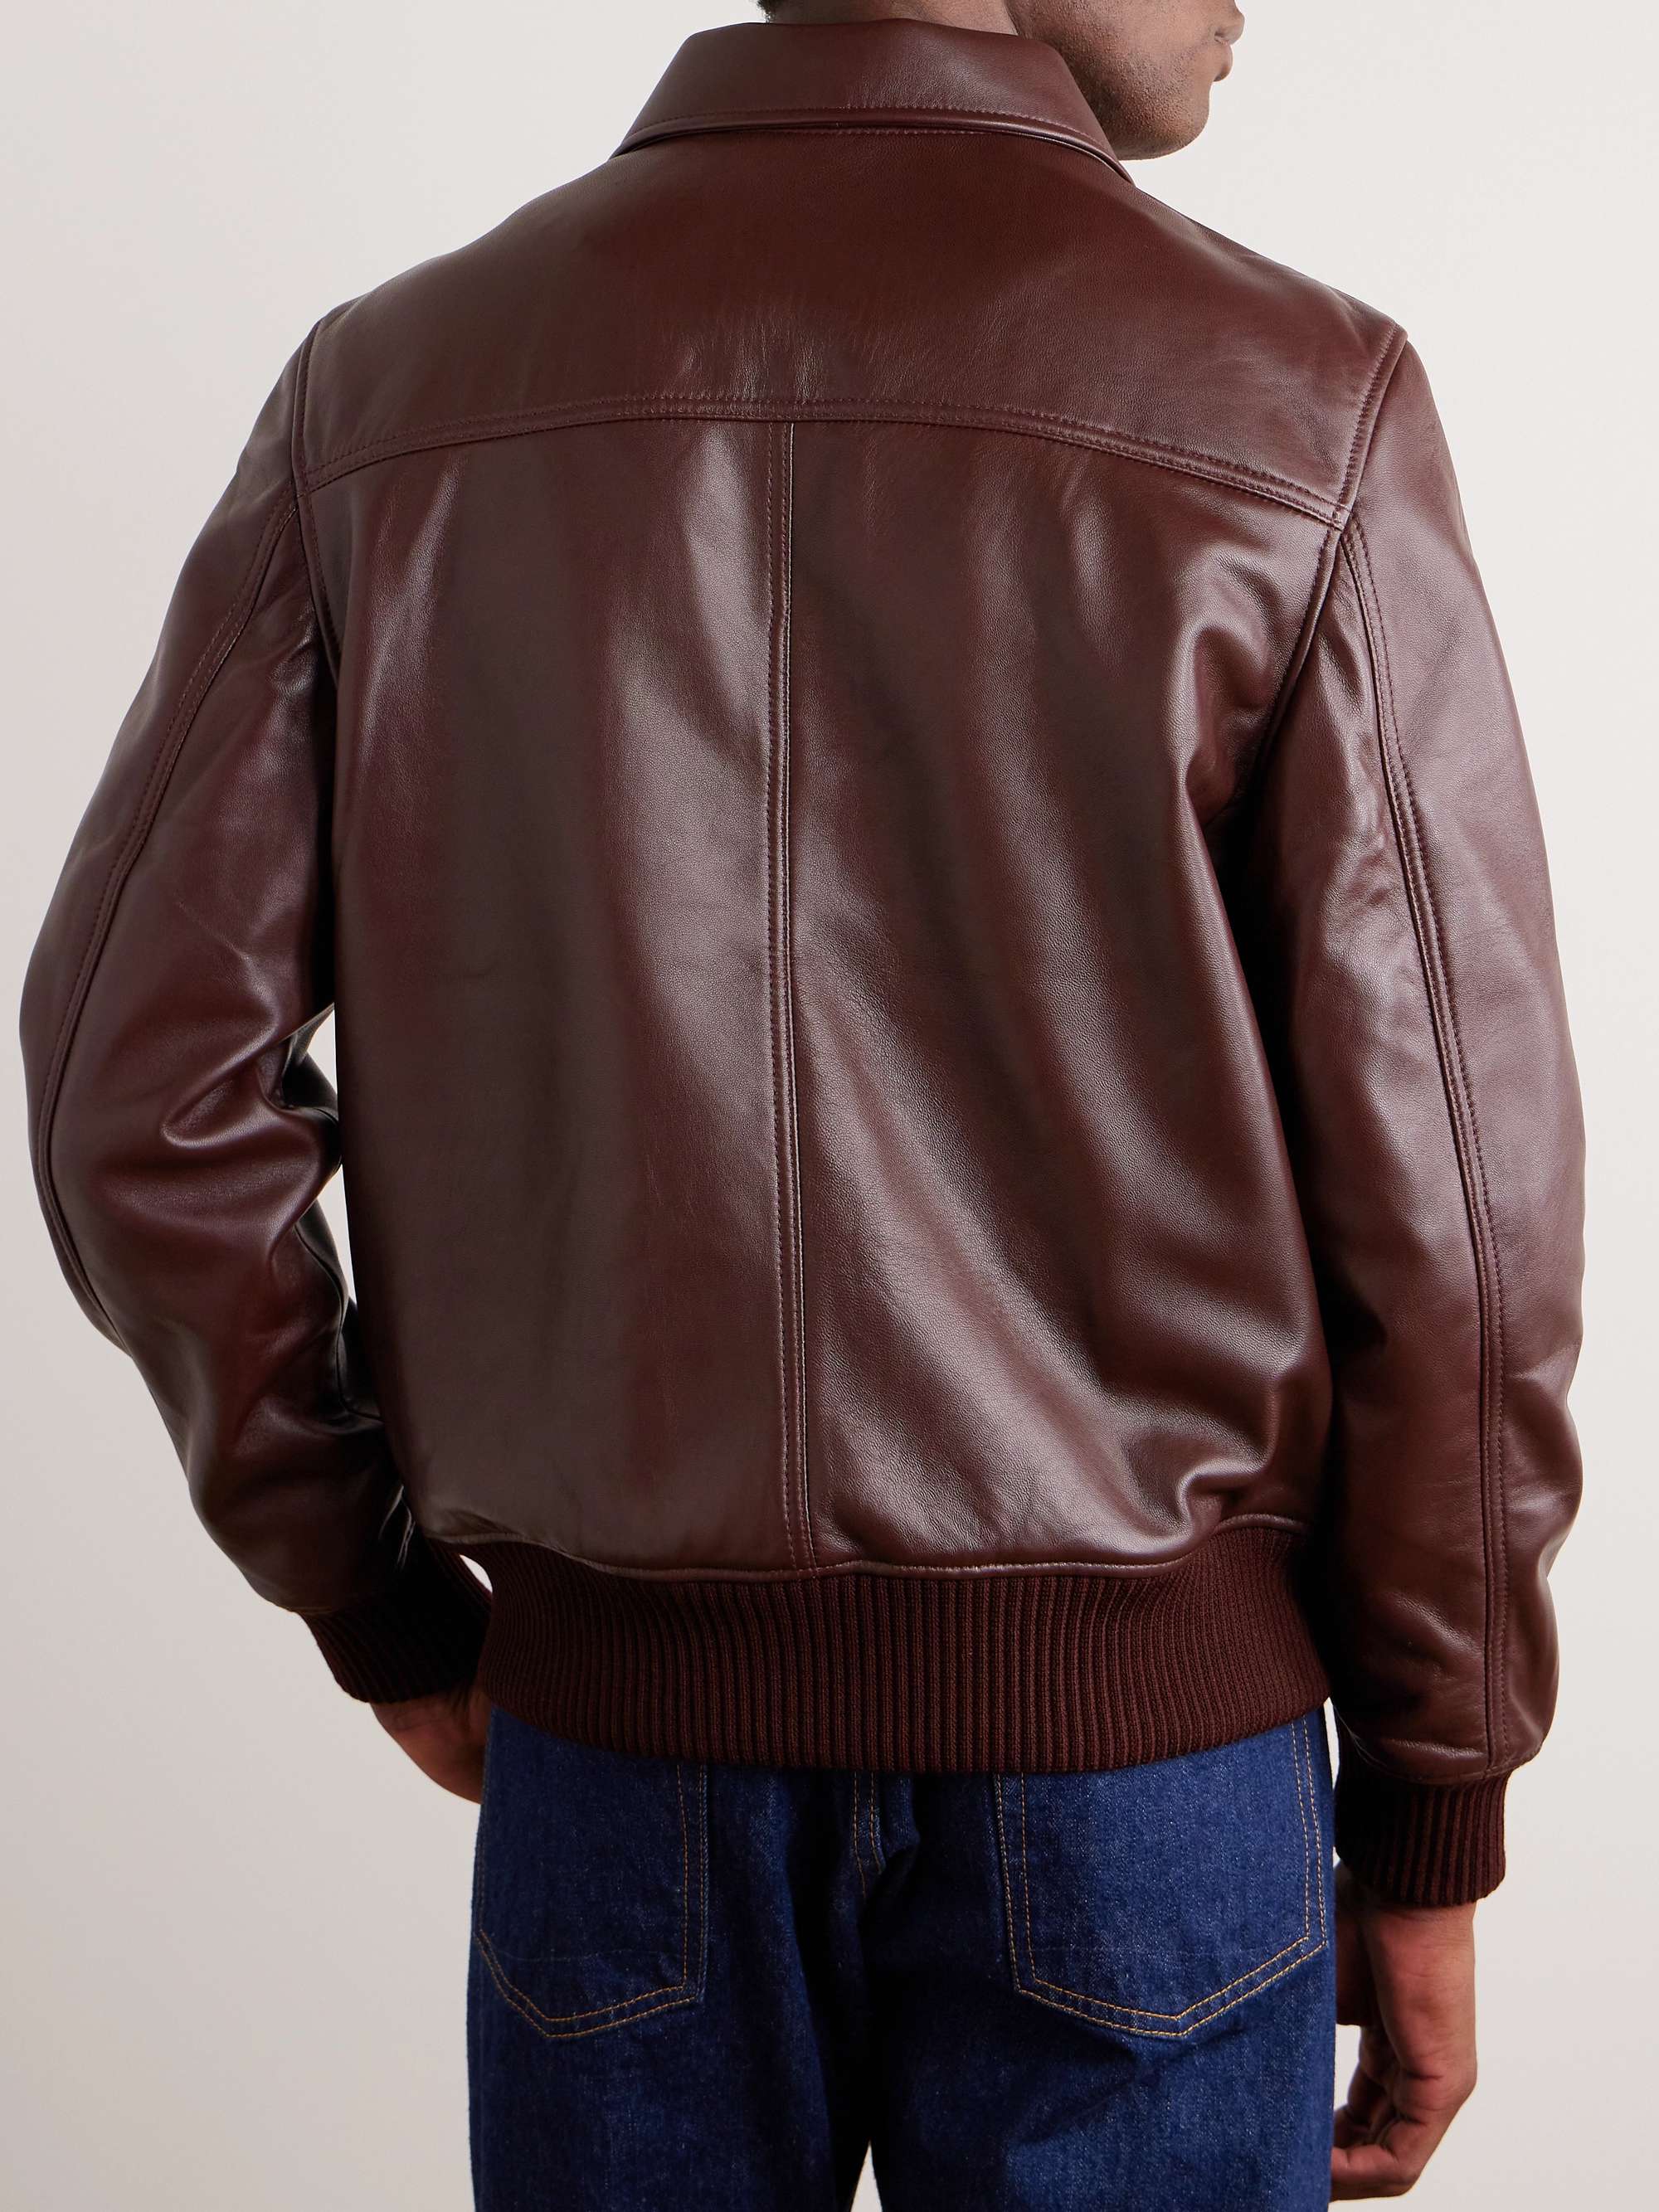 OFFICINE GÉNÉRALE Gianni Leather Jacket for Men | MR PORTER